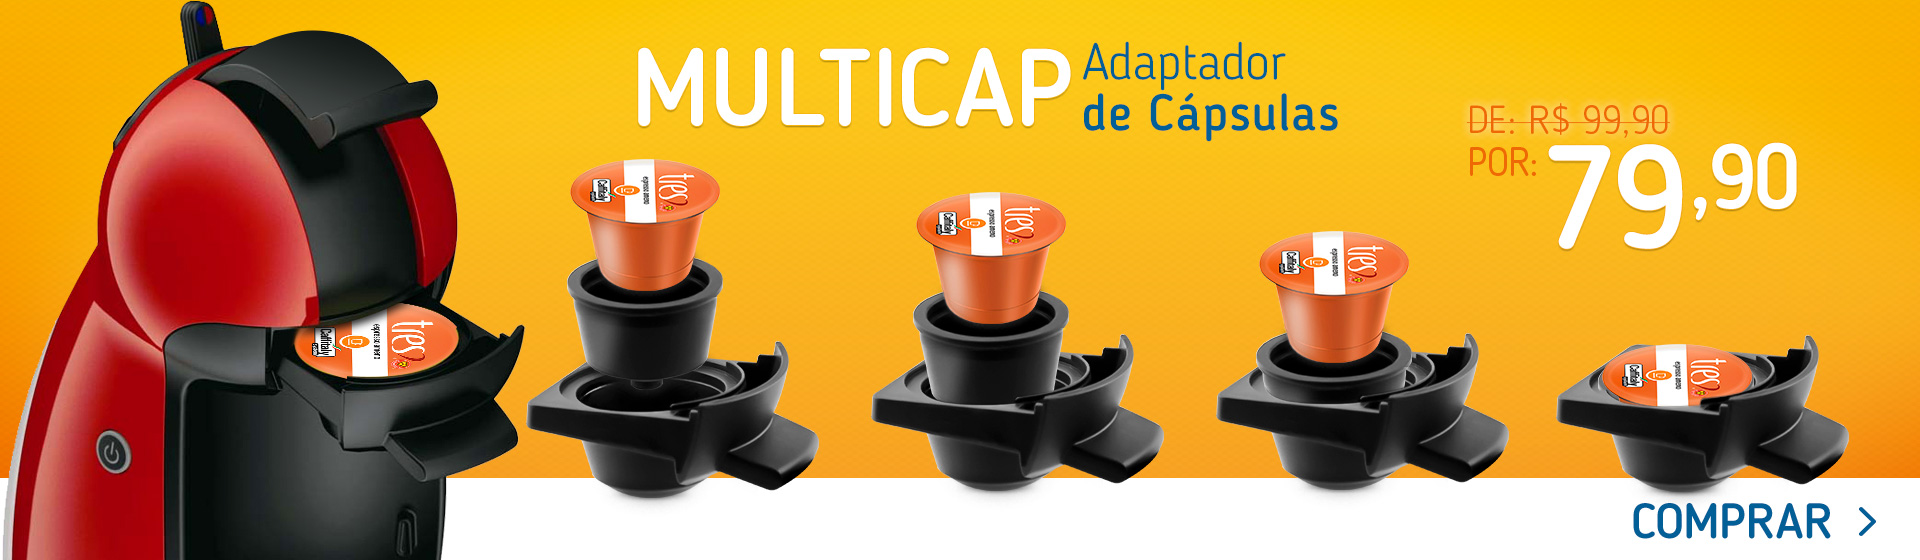 Multicap